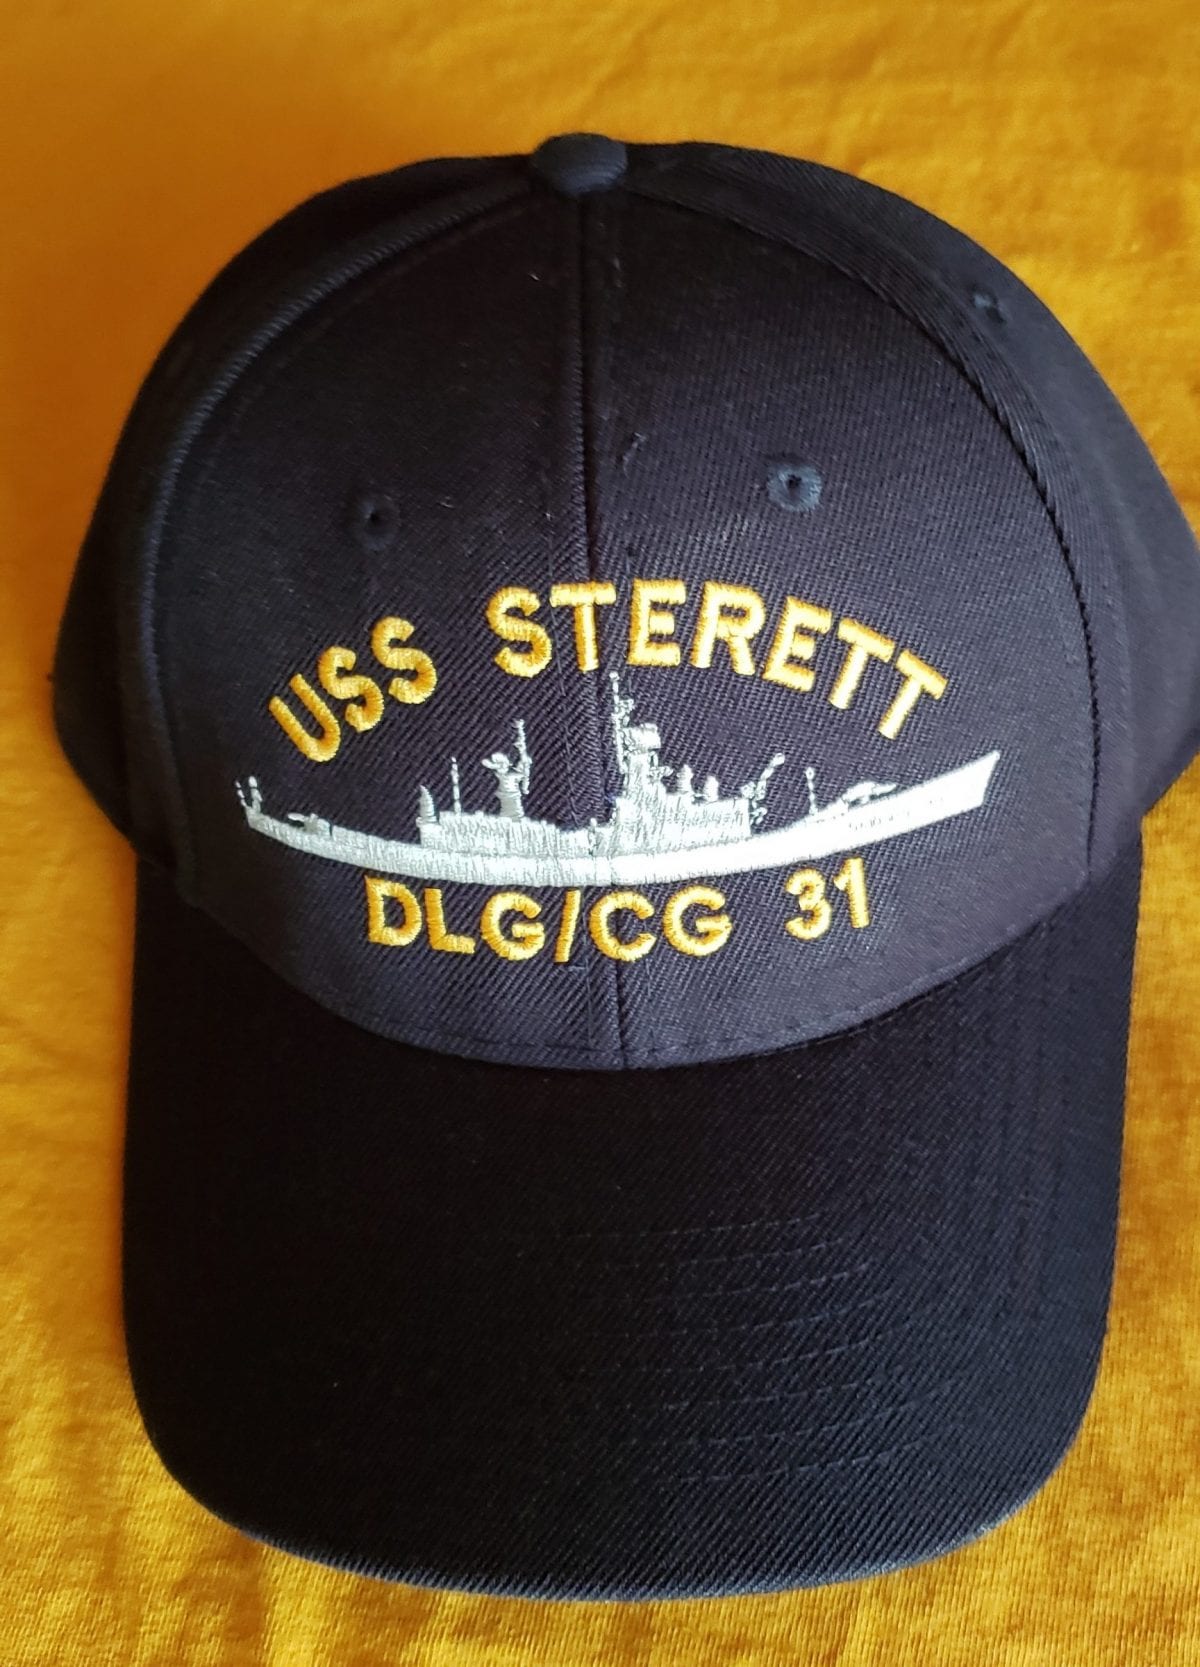 Ball Cap, Wool Blend, Navy Blue Made in USA DLG/CG — Sterett Association